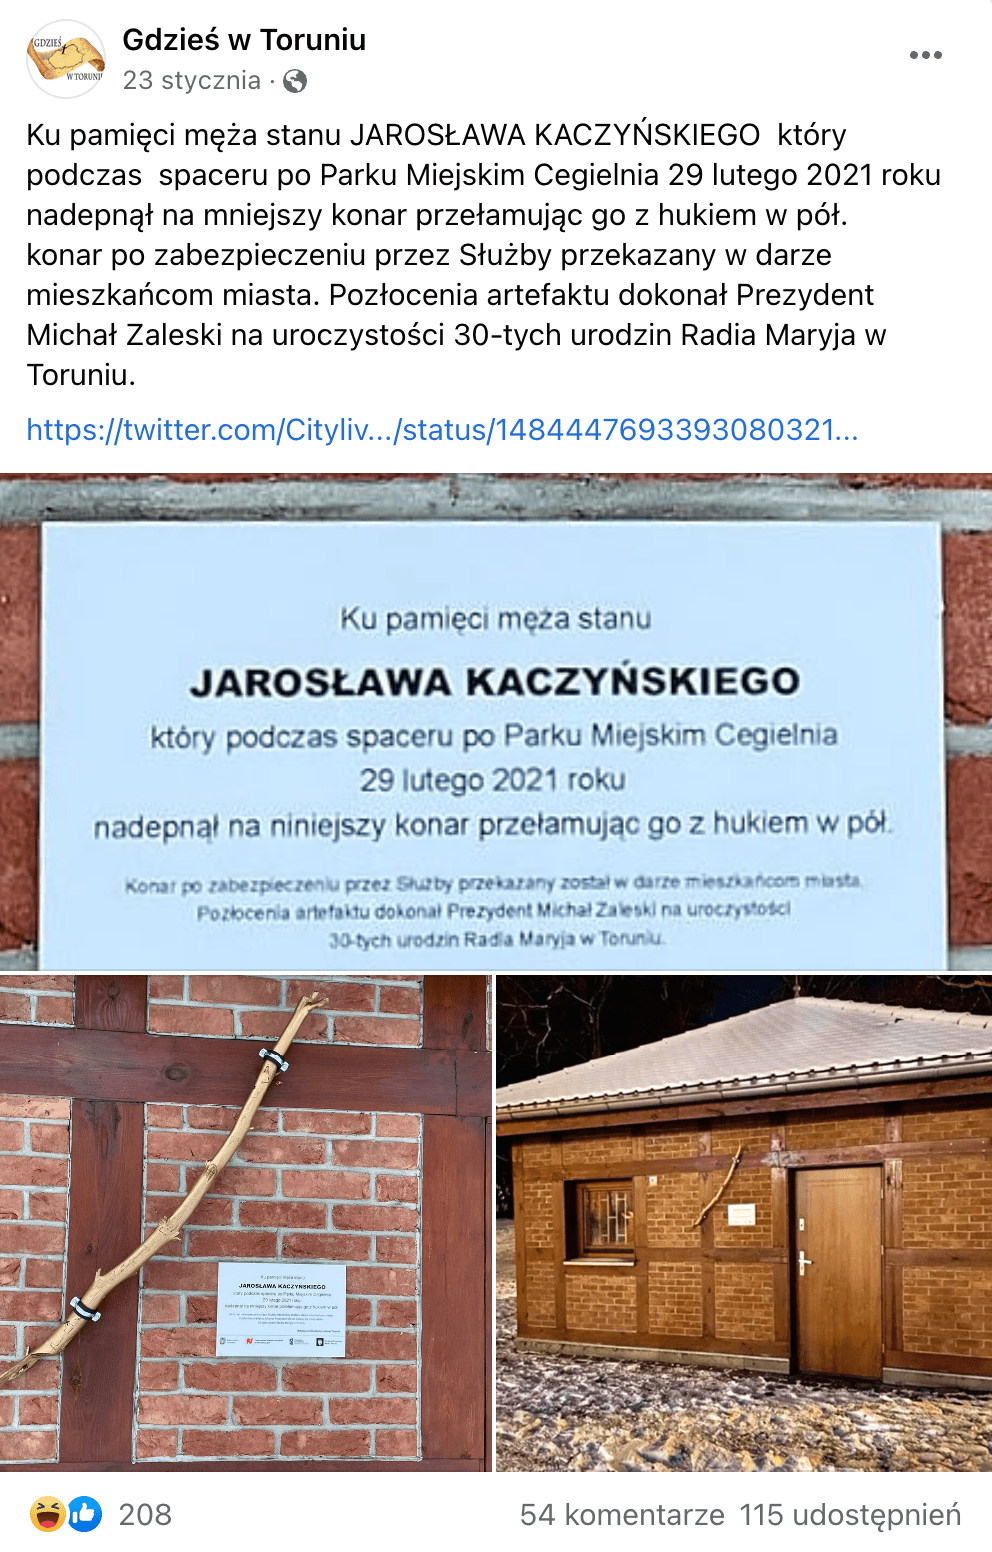 Zrzut ekranu z posta na Facebooku na temat pamiątkowego konara przełamanego przez Jarosława Kaczyńskiego. Wpis zdobył ponad 208 reakcji, ponad 50 komentarzy i ponad 110 udostępnień.